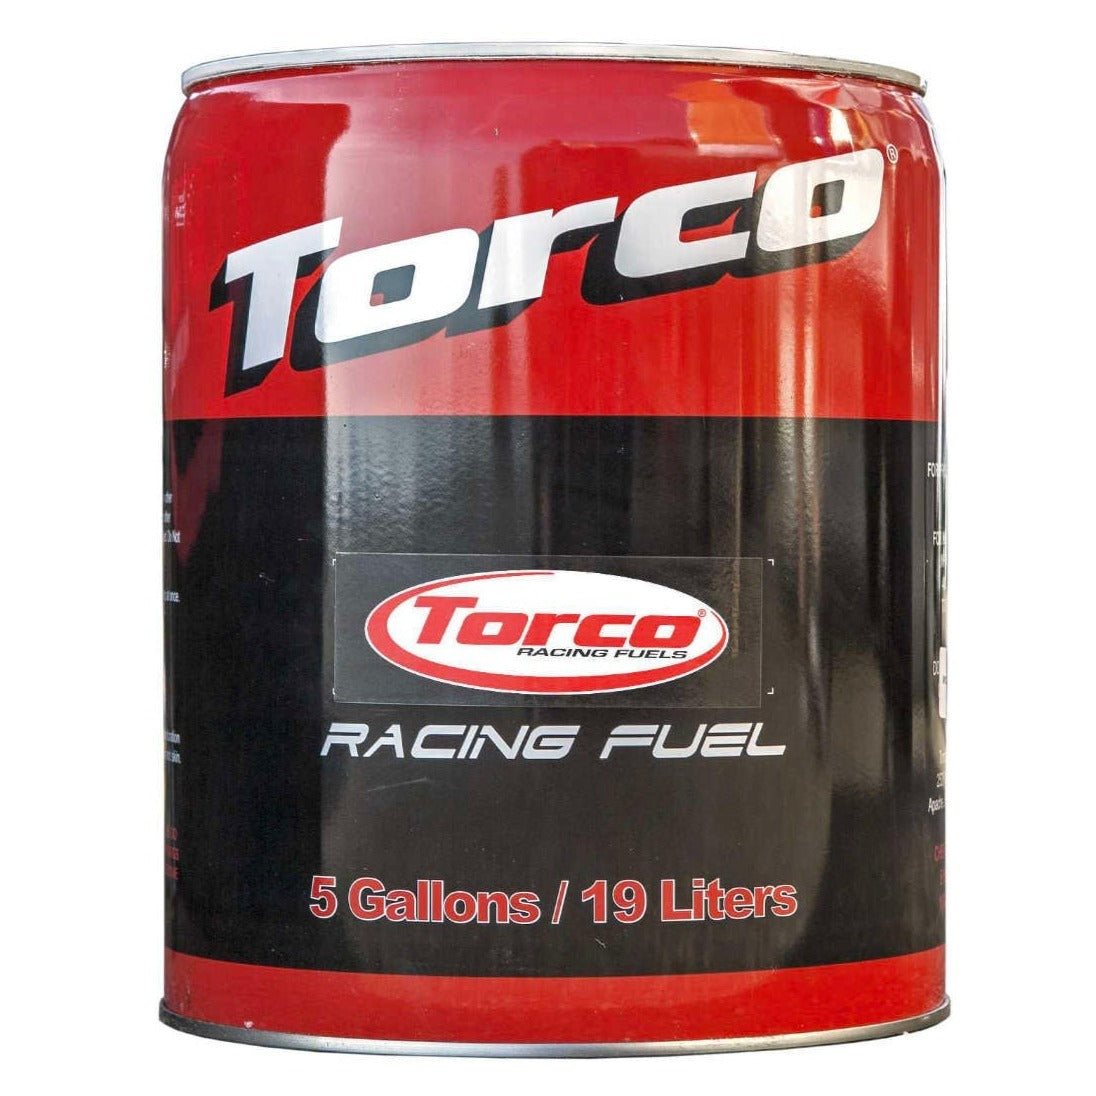 Torco Race Fuel 116 octane Leaded